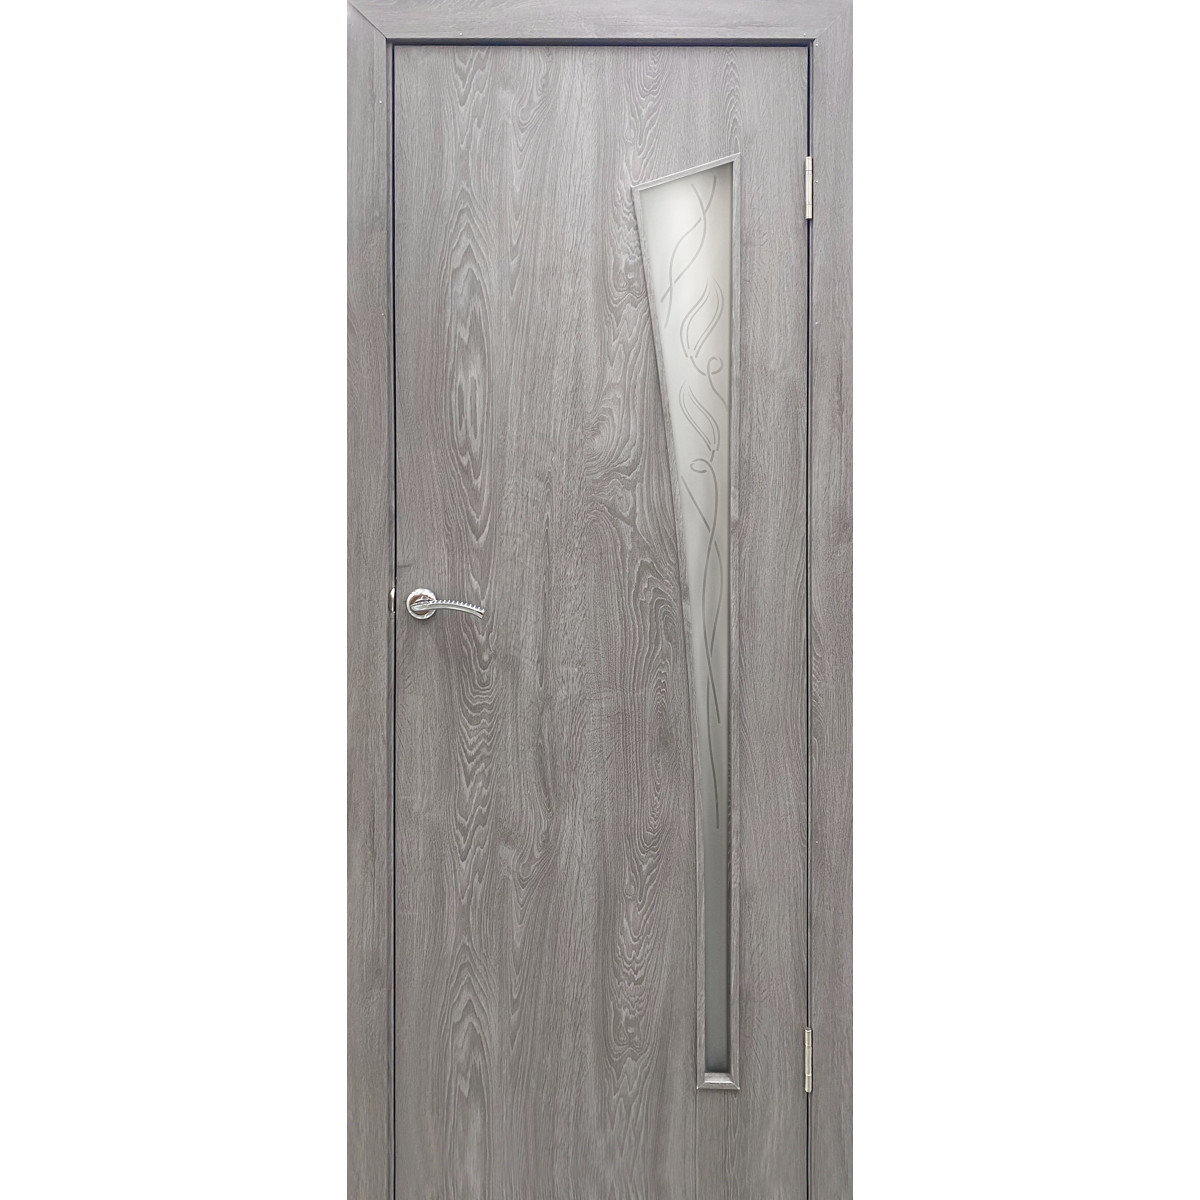 Дверь межкомнатная остекленная ламинированная Белеза 200х90 см цвет тернер серый